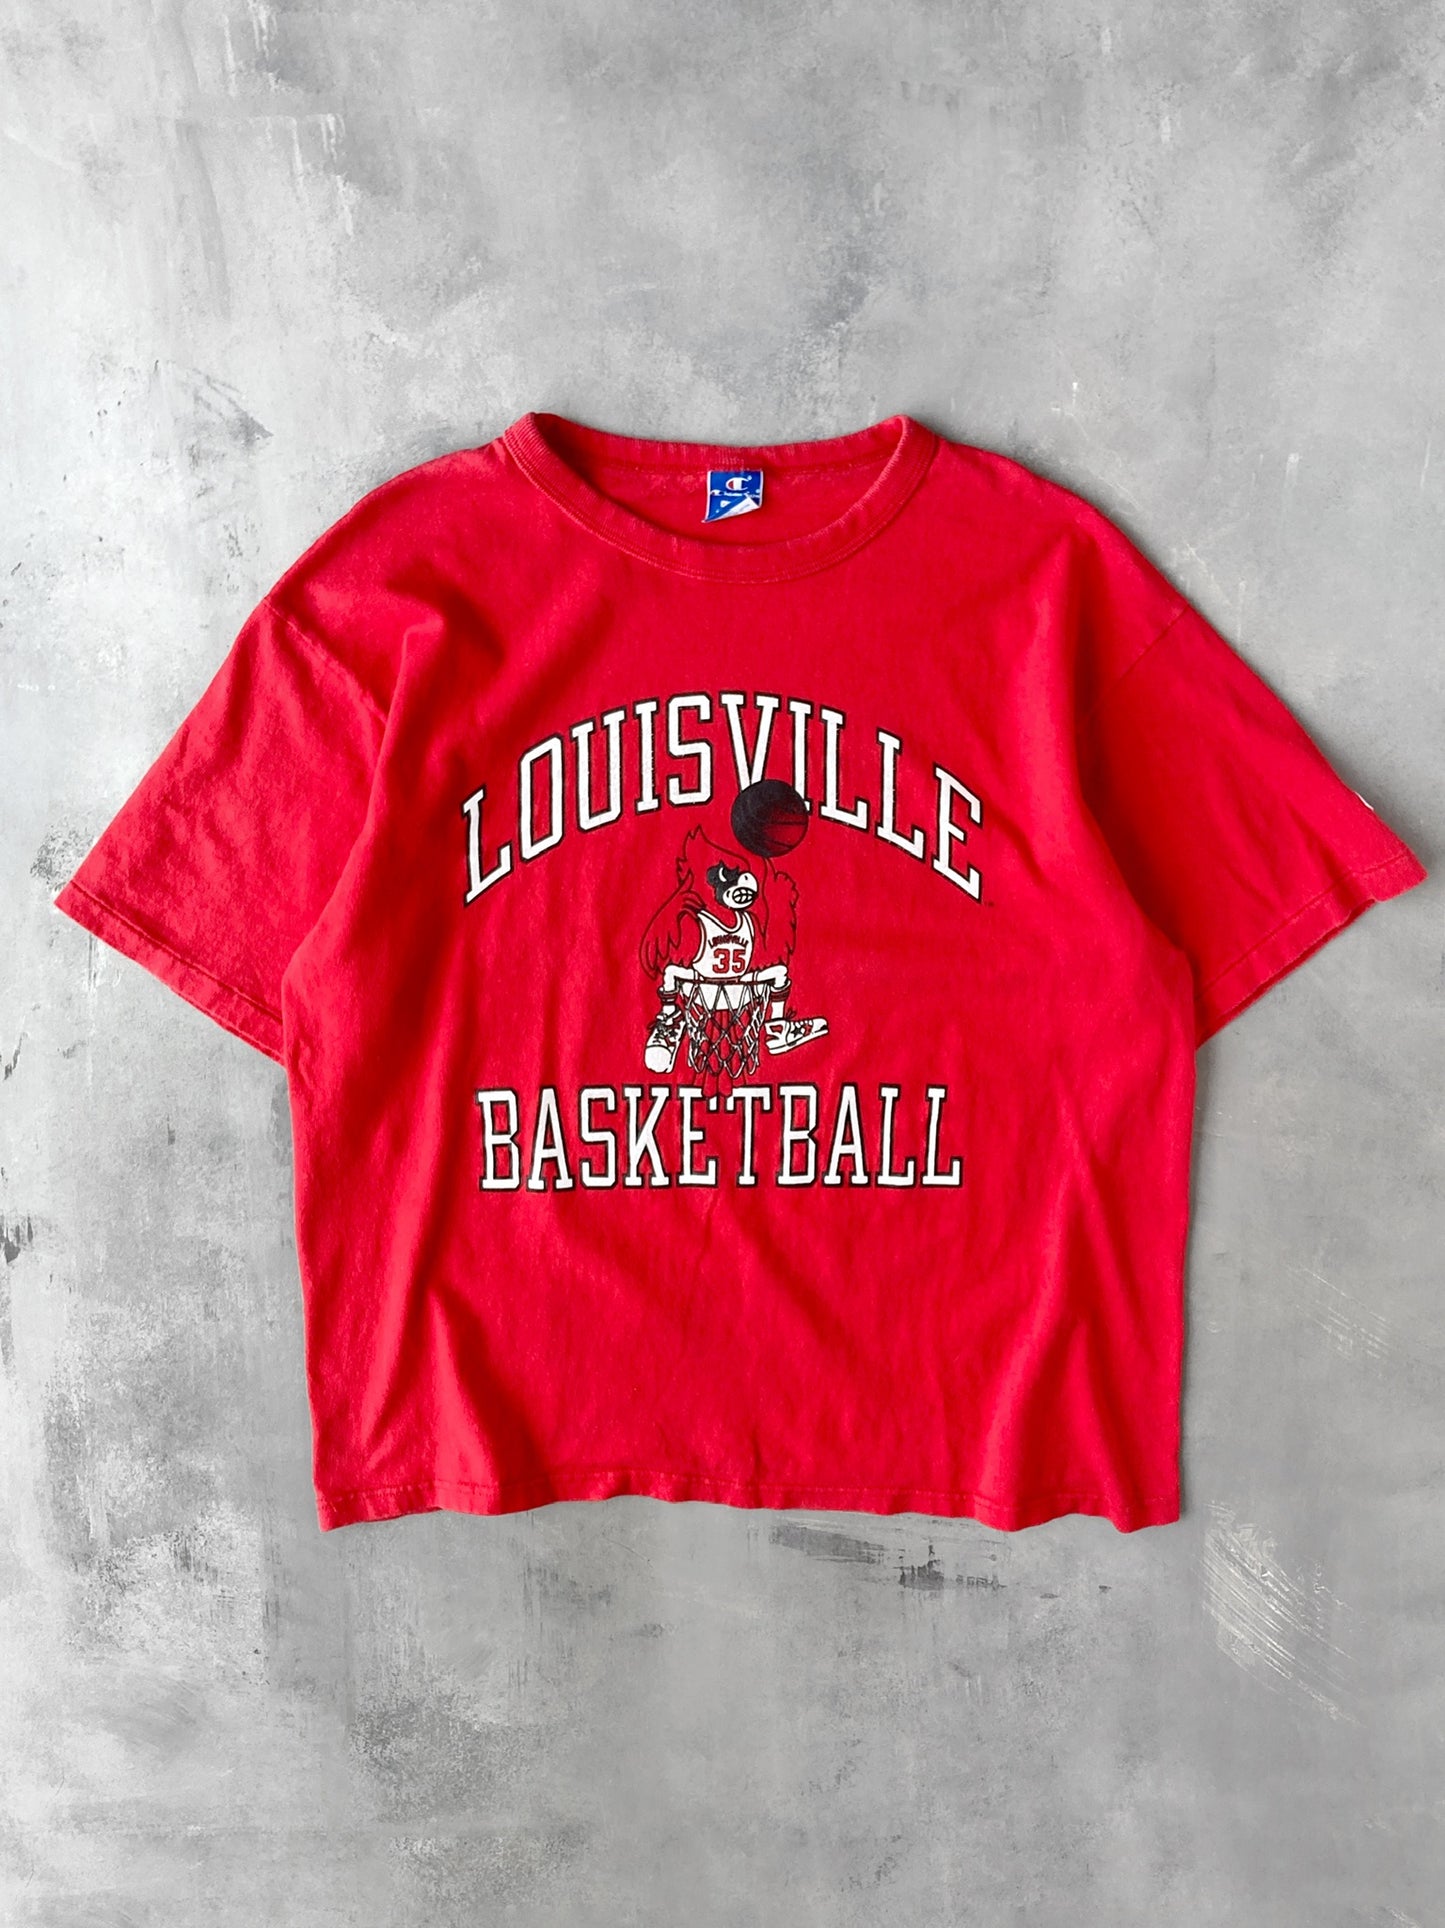 Louisville Basketball T-Shirt 90's - XL